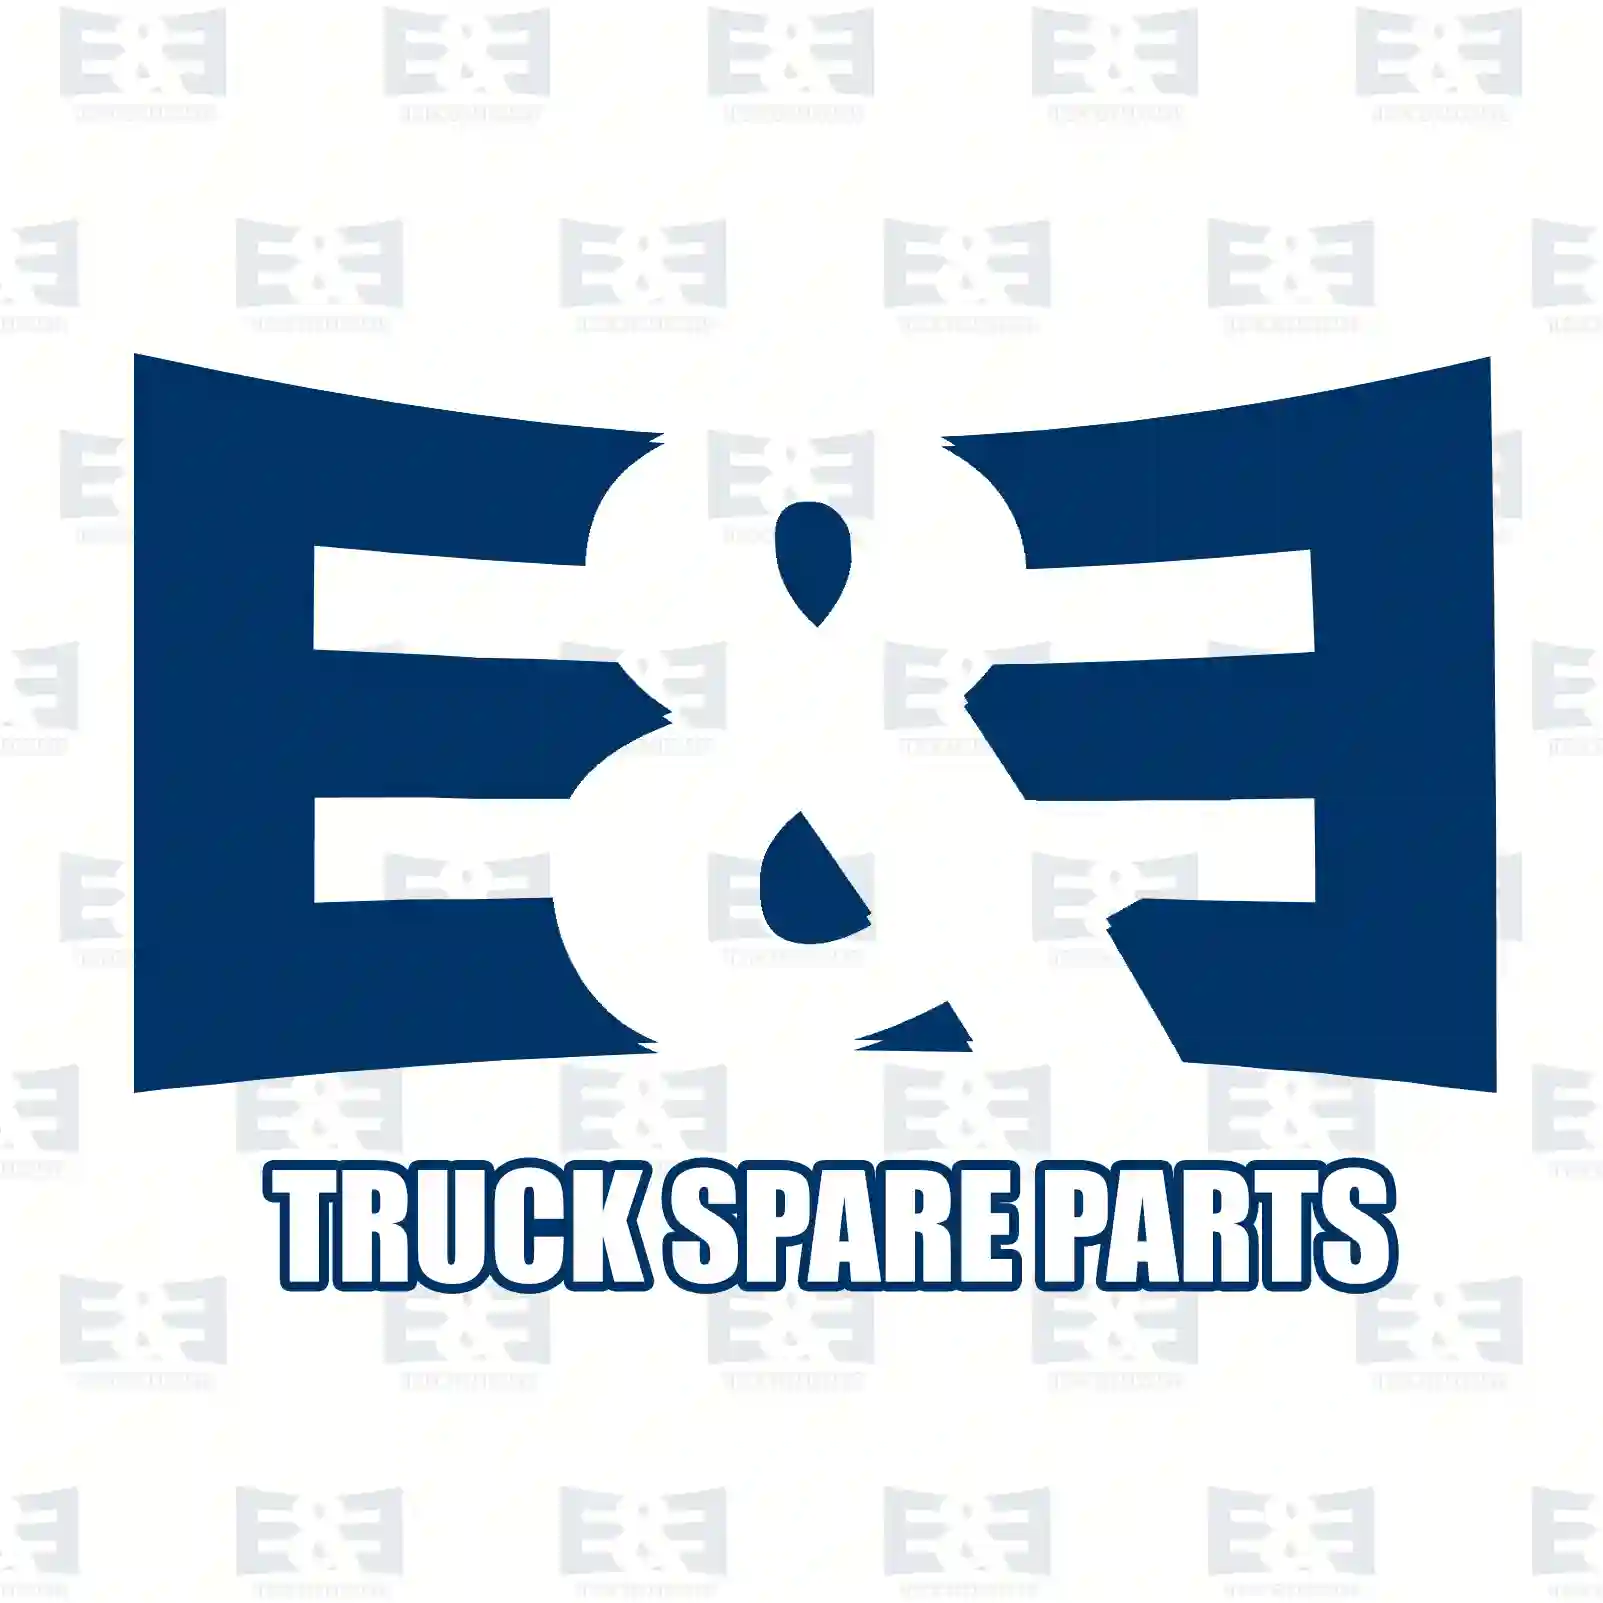 NOx Sensor, 2E2298690, 1928760, 1953530, 2139930 ||  2E2298690 E&E Truck Spare Parts | Truck Spare Parts, Auotomotive Spare Parts NOx Sensor, 2E2298690, 1928760, 1953530, 2139930 ||  2E2298690 E&E Truck Spare Parts | Truck Spare Parts, Auotomotive Spare Parts